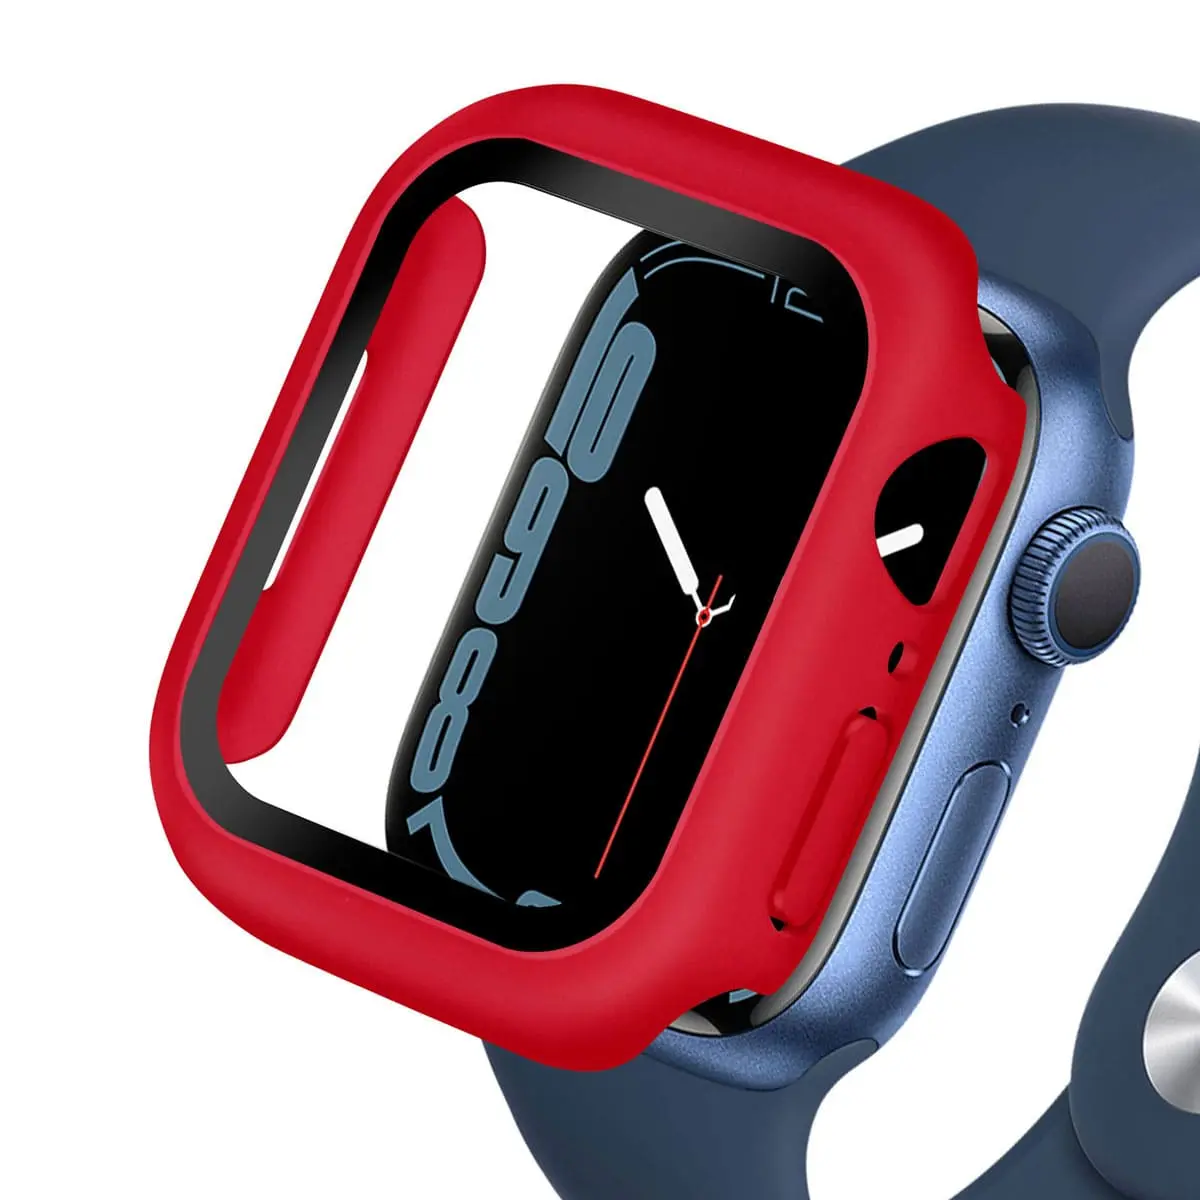 Tous les accessoires pour Apple Watch disponibles sur Gsm55